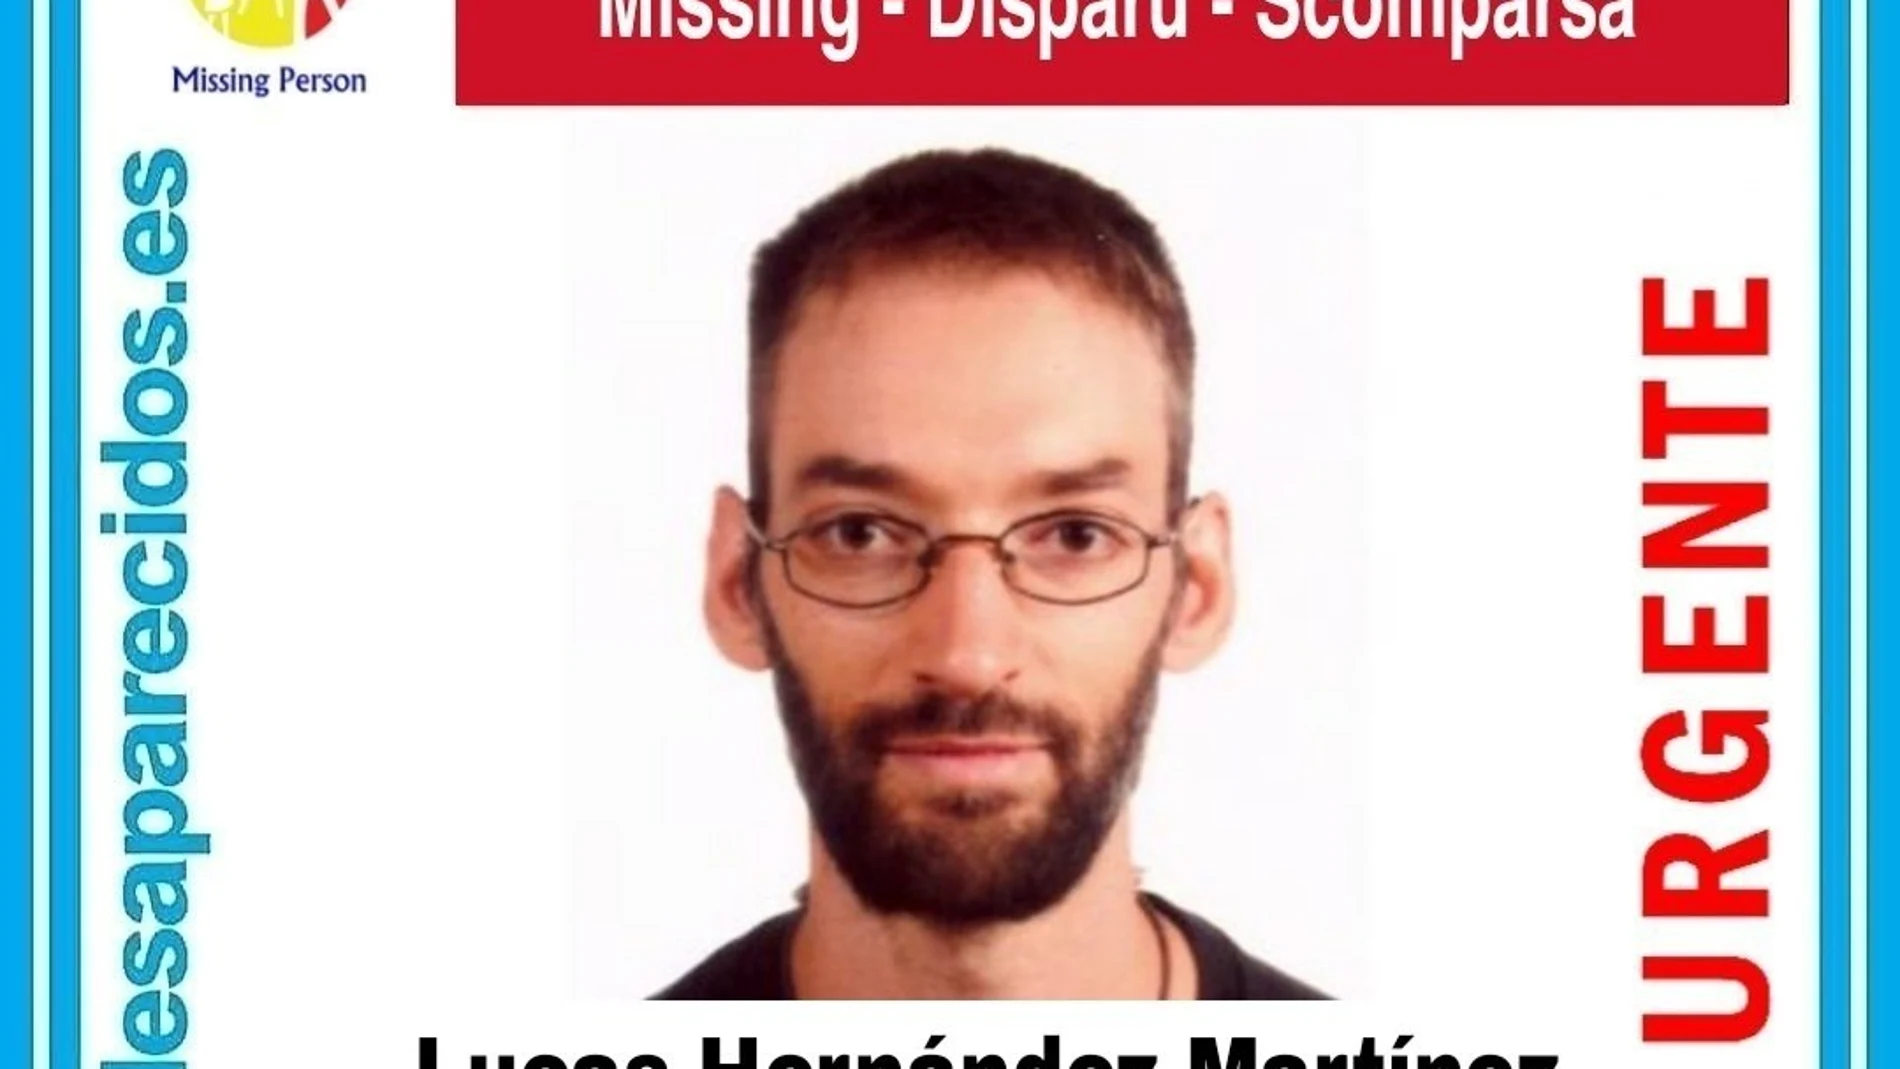 Cartel de SOS desaparecidos alertando de la desaparición de Lucas Hernández